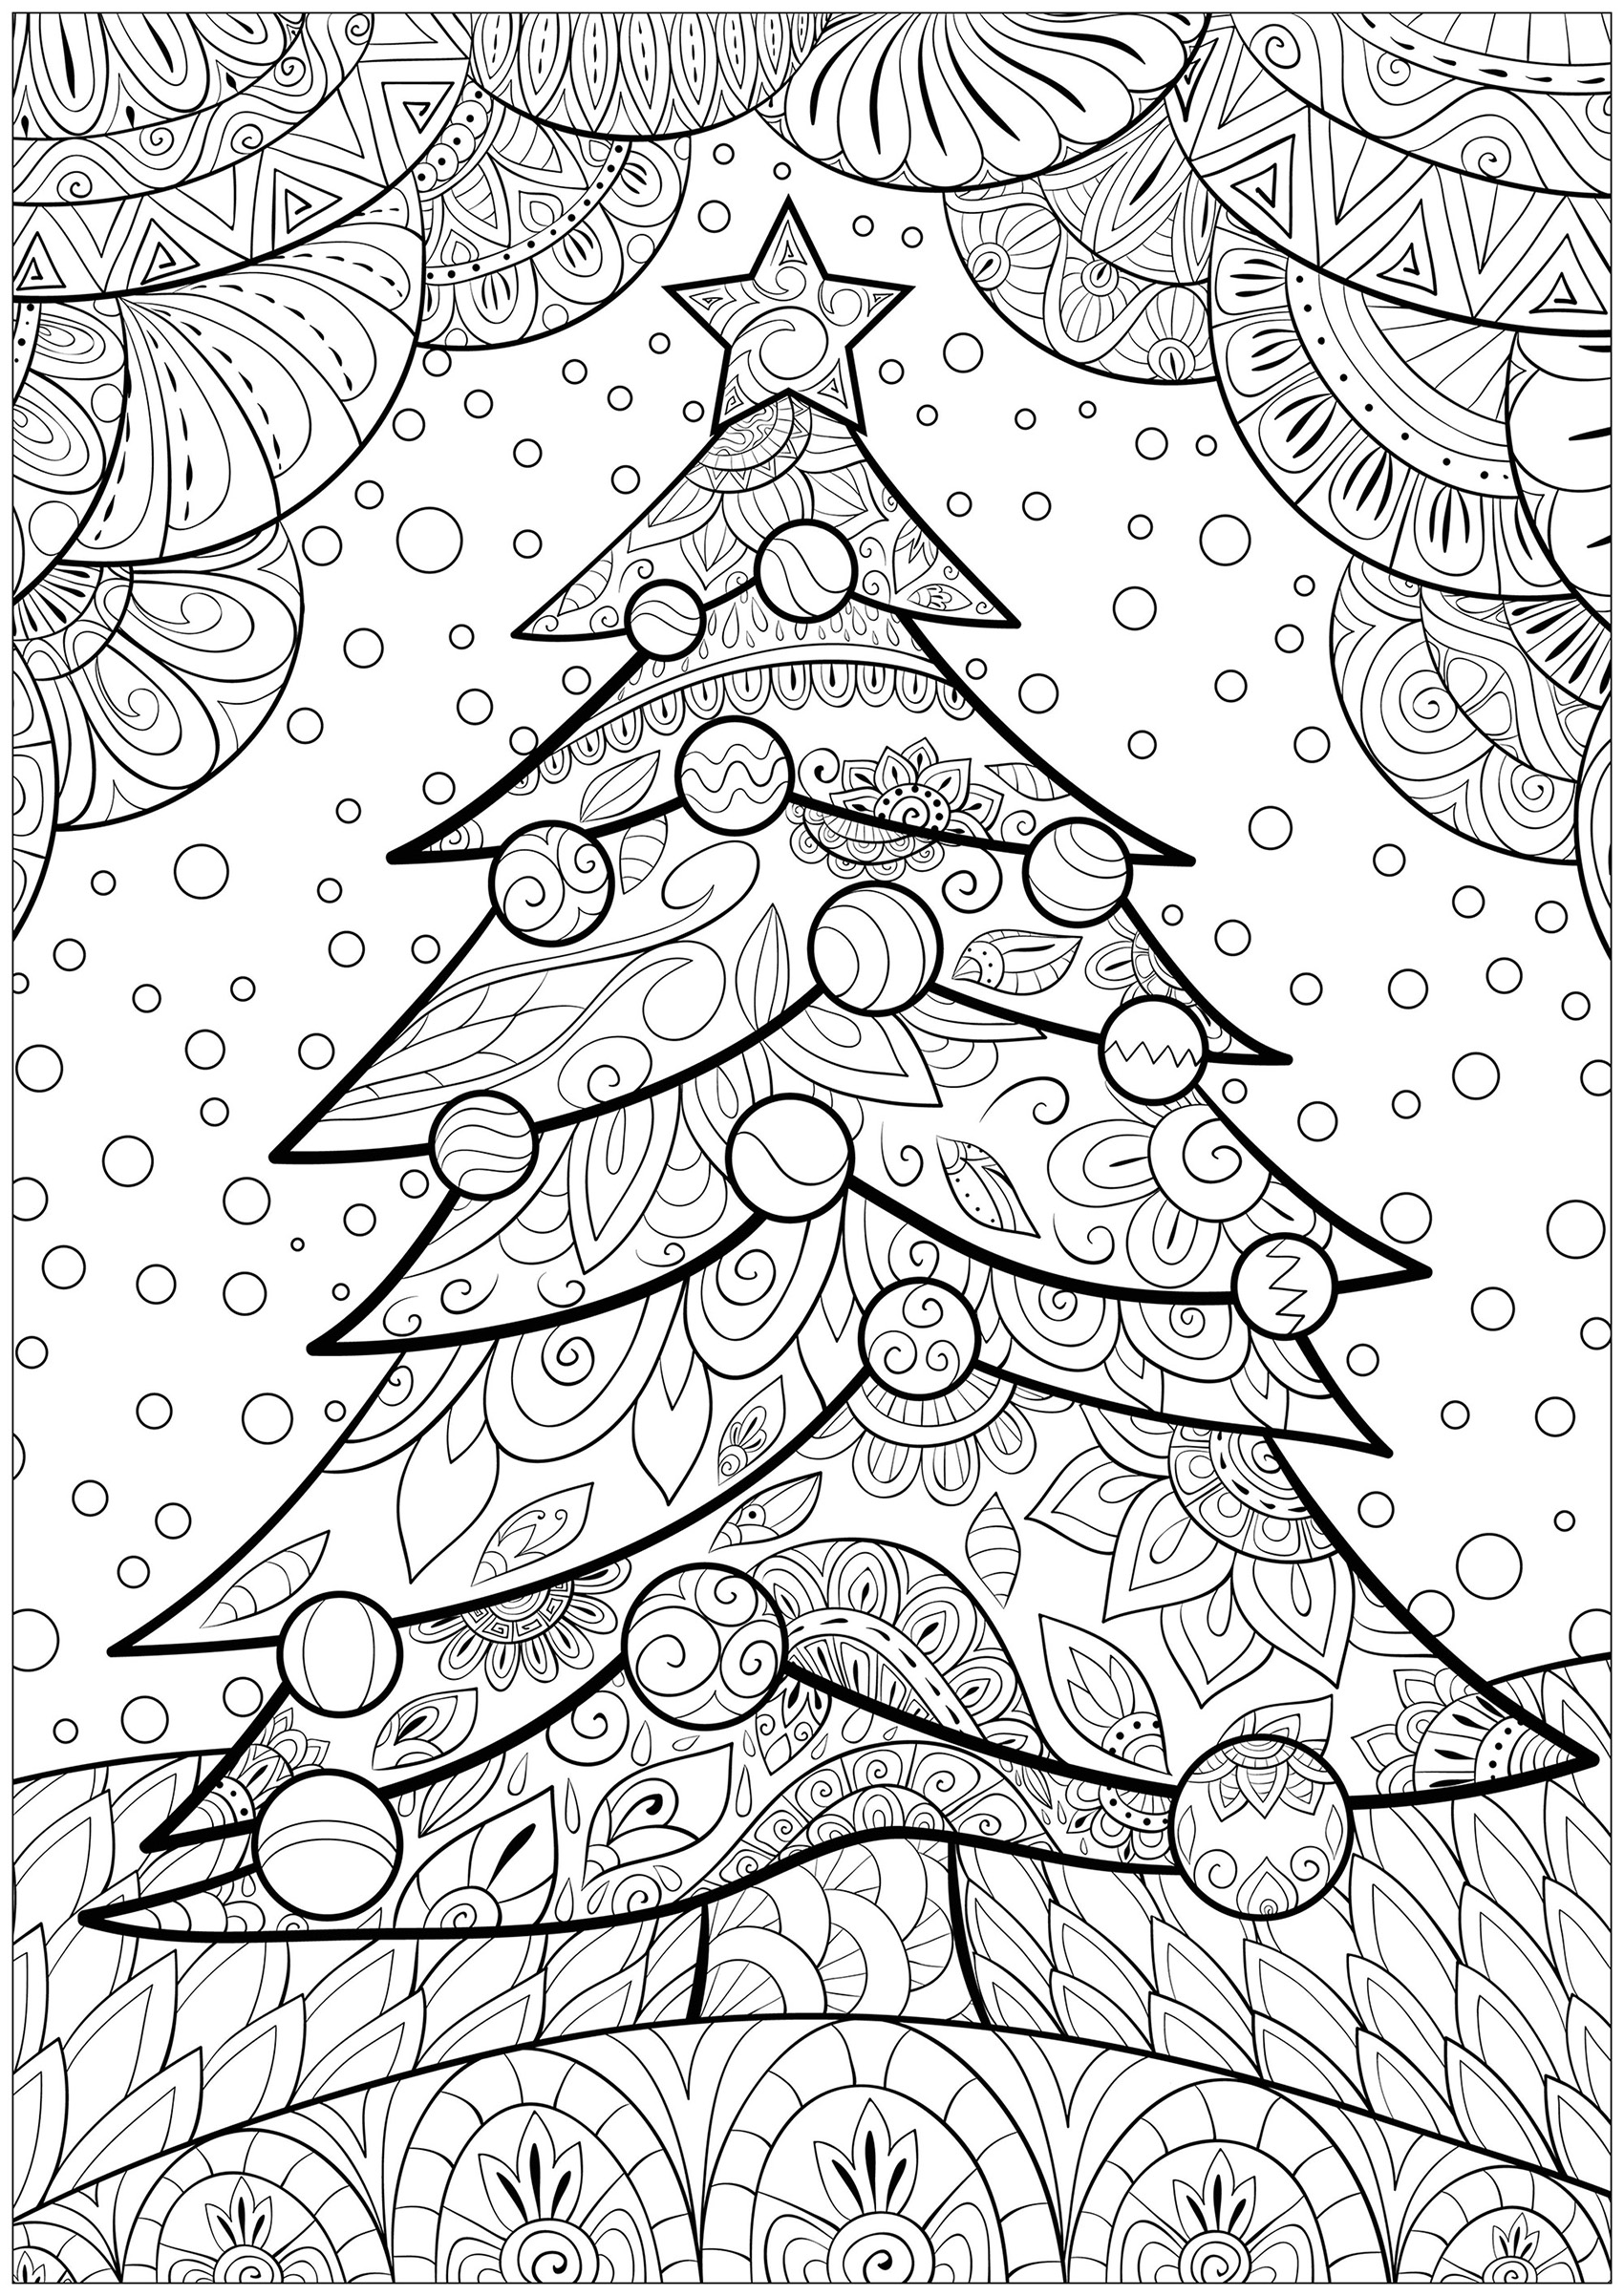 Sapin de Noël majestueux, avec arrière plan aux motifs complexes, Source : 123rf   Artiste : Nonuzza